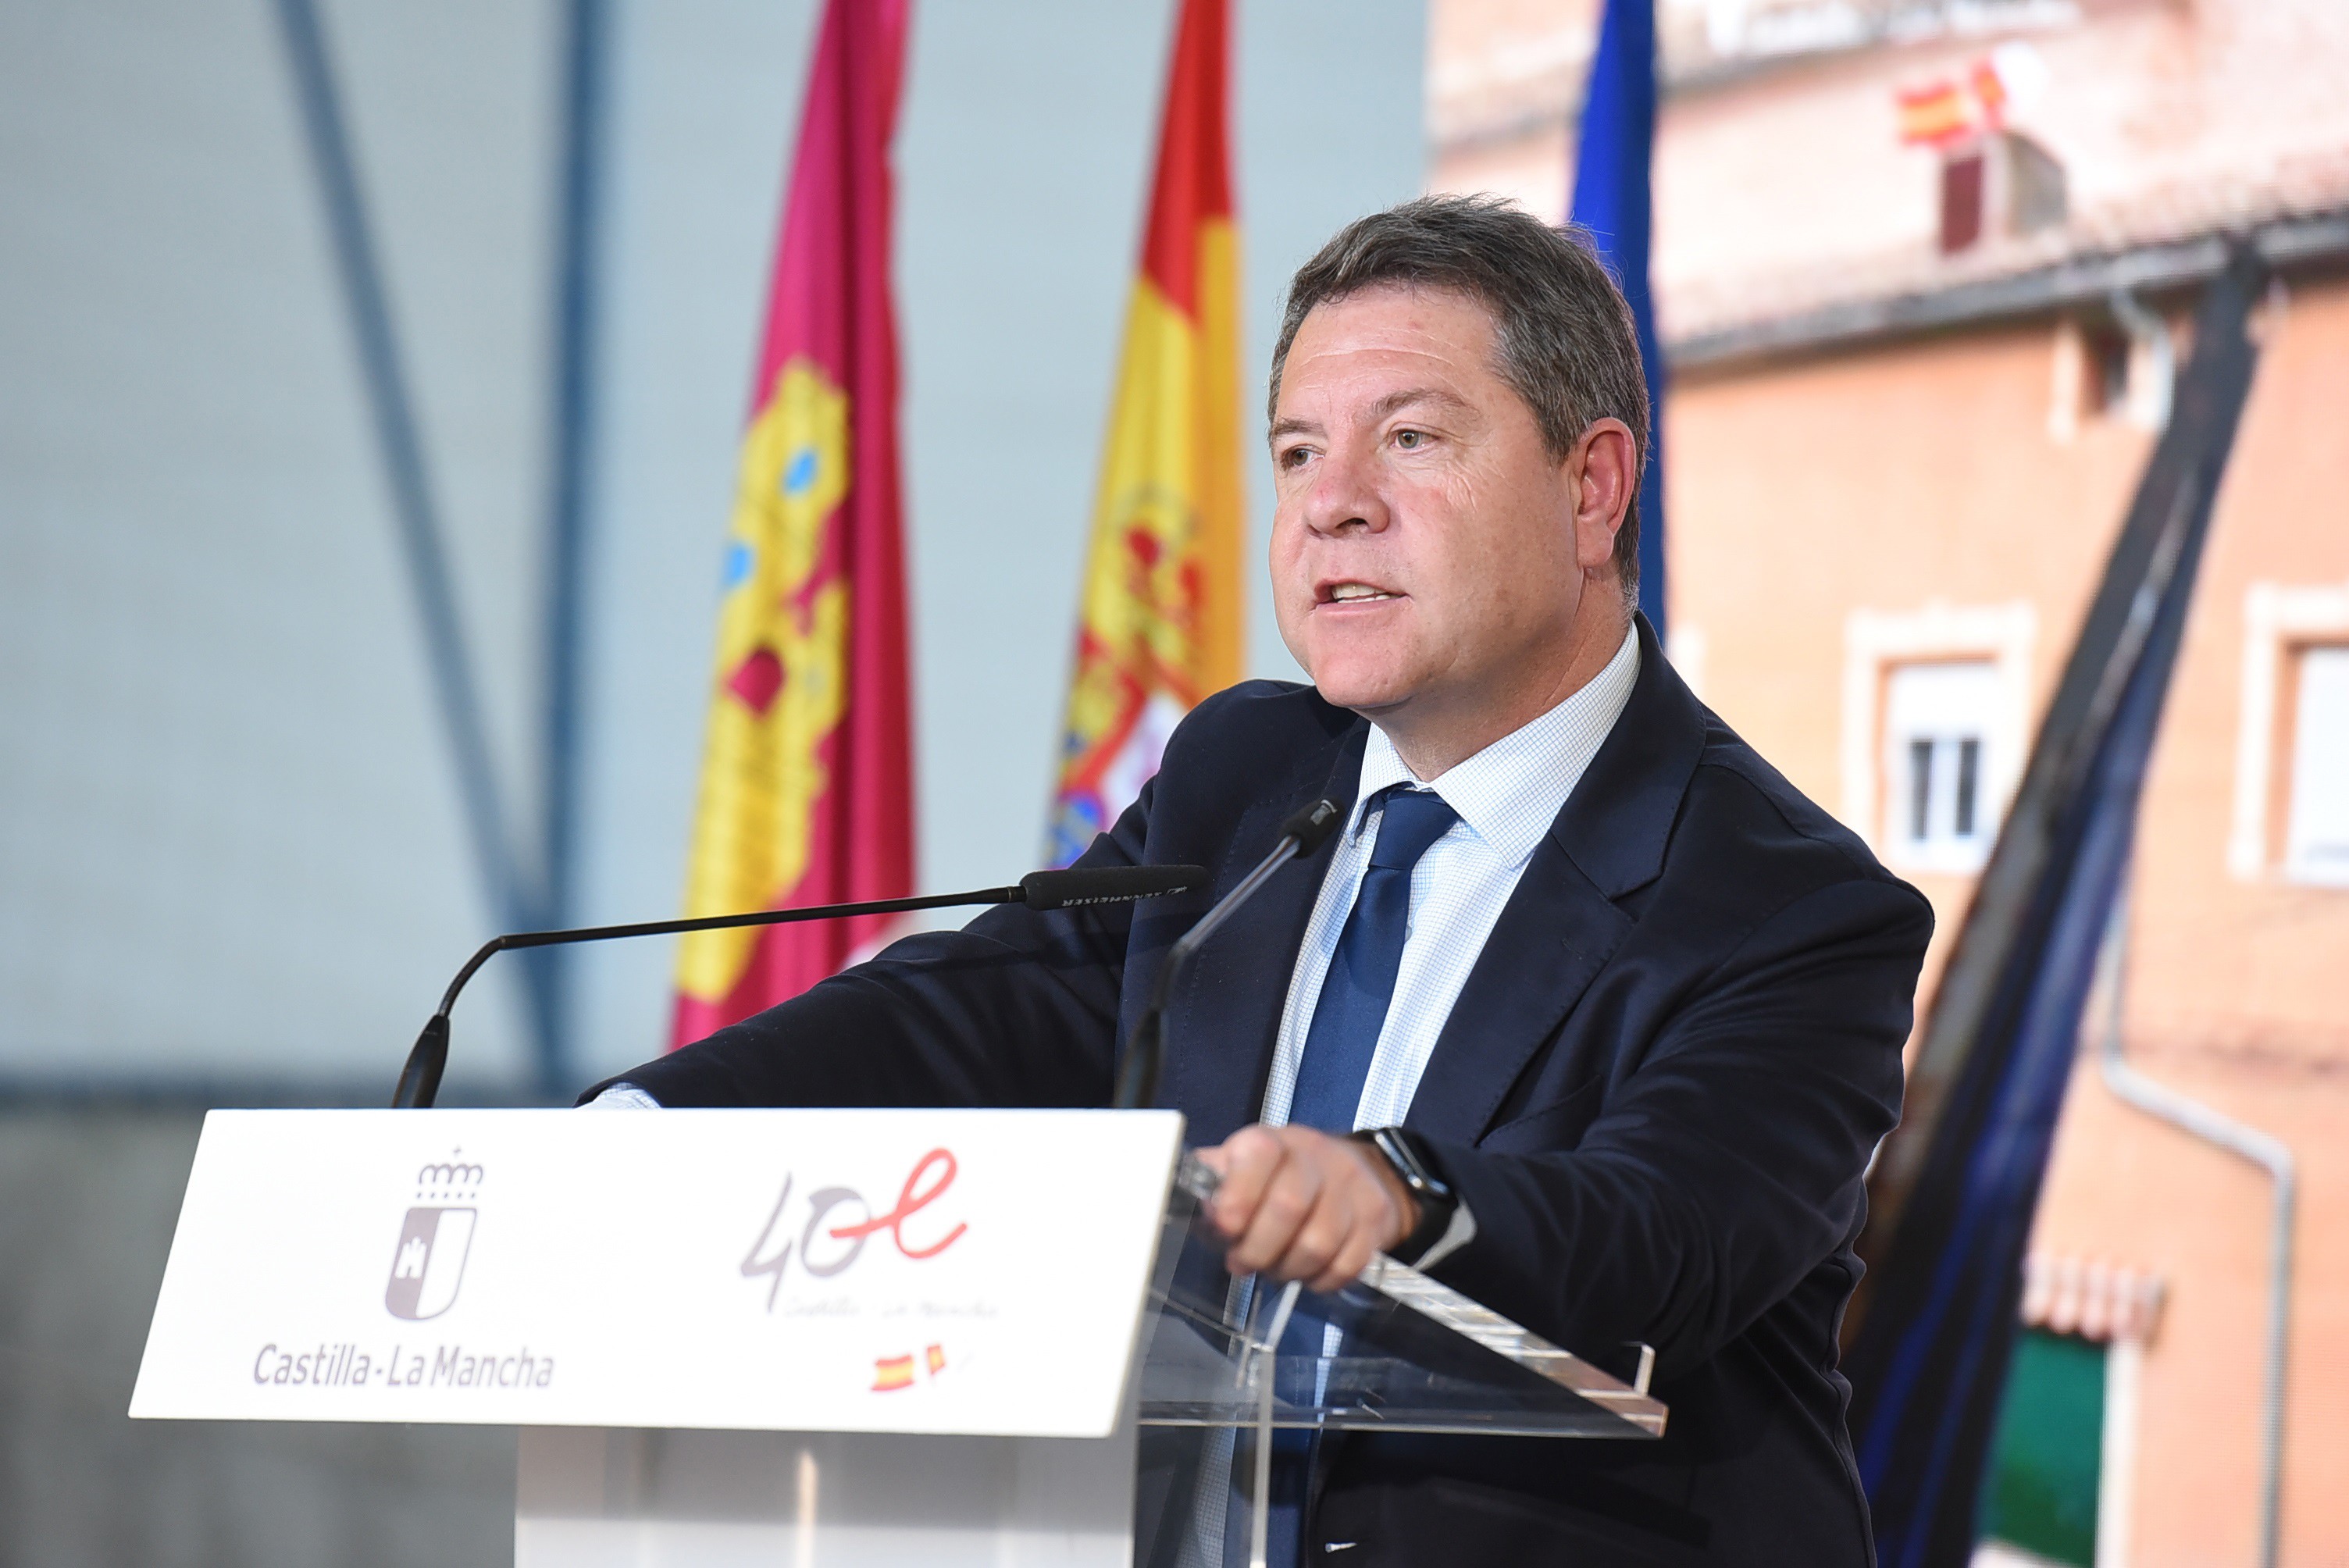 El presidente de Castilla-La Mancha, Emiliano García-Page, inaugura el Recinto multiusos de San Lorenzo de la Parrilla (Cuenca).